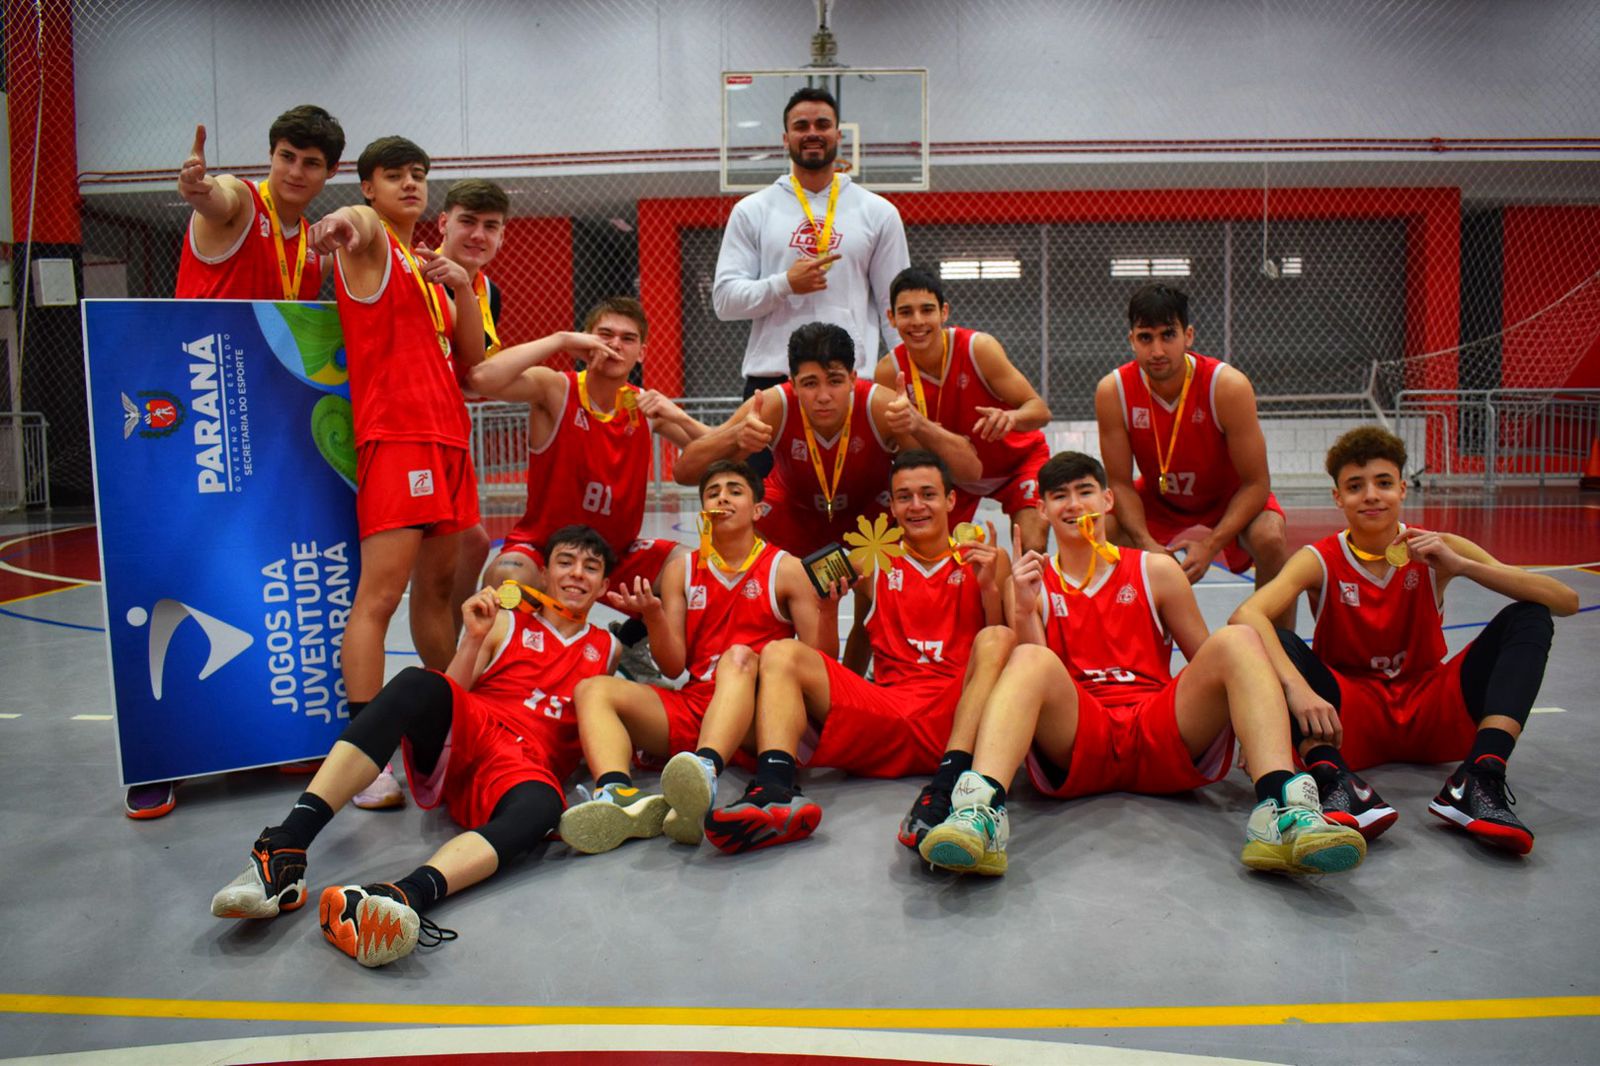 A equipe de basquete da Liga Desportiva de Ponta Grossa (LDPG), venceram União da Vitória e São José dos Pinhais